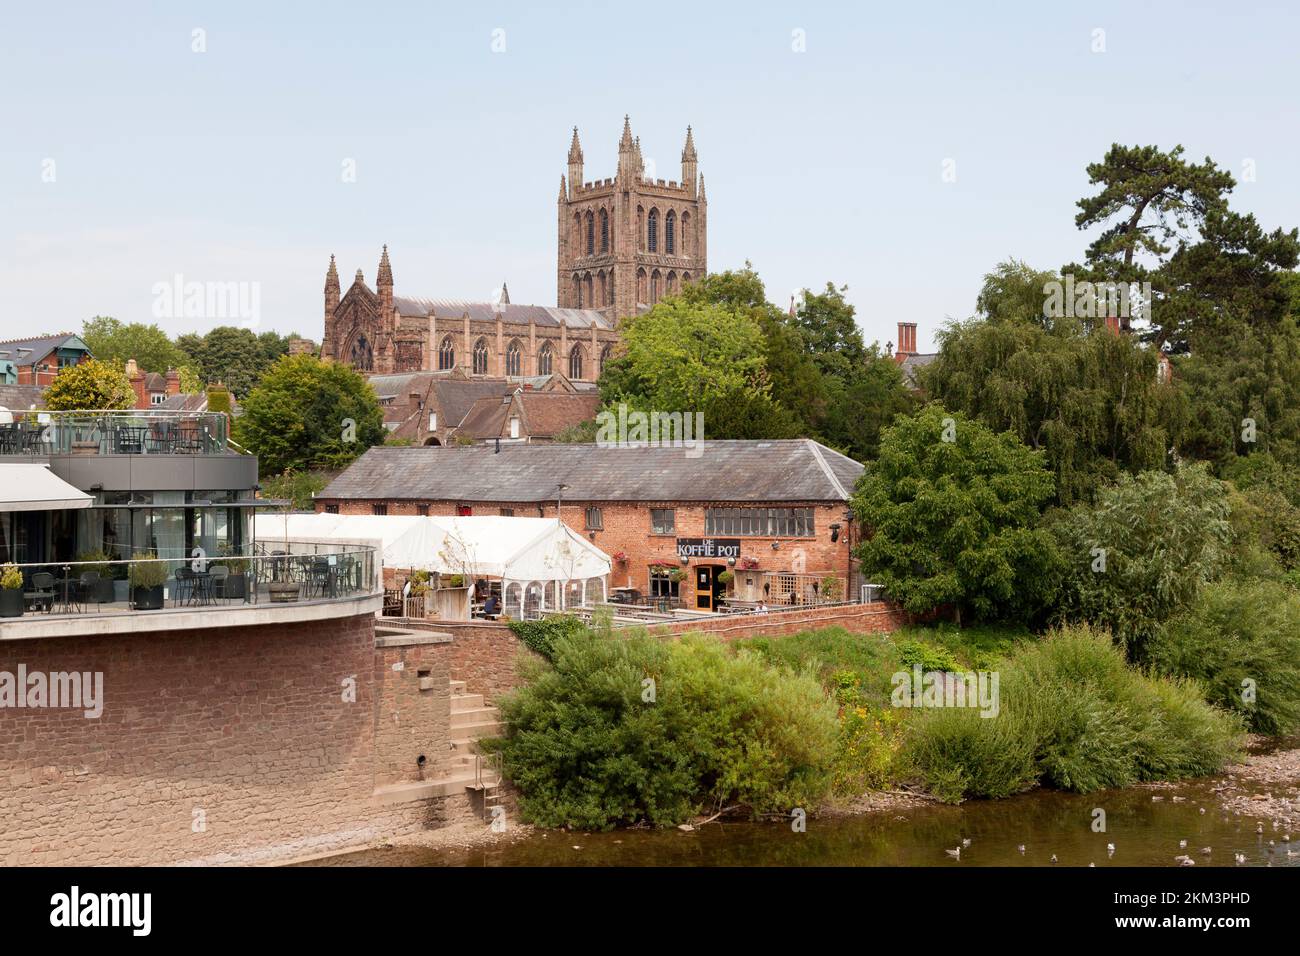 Blick auf die Kathedrale, mit dem Koffie Pot Restaurant neben dem River Wye, Hereford, Herefordshire Stockfoto